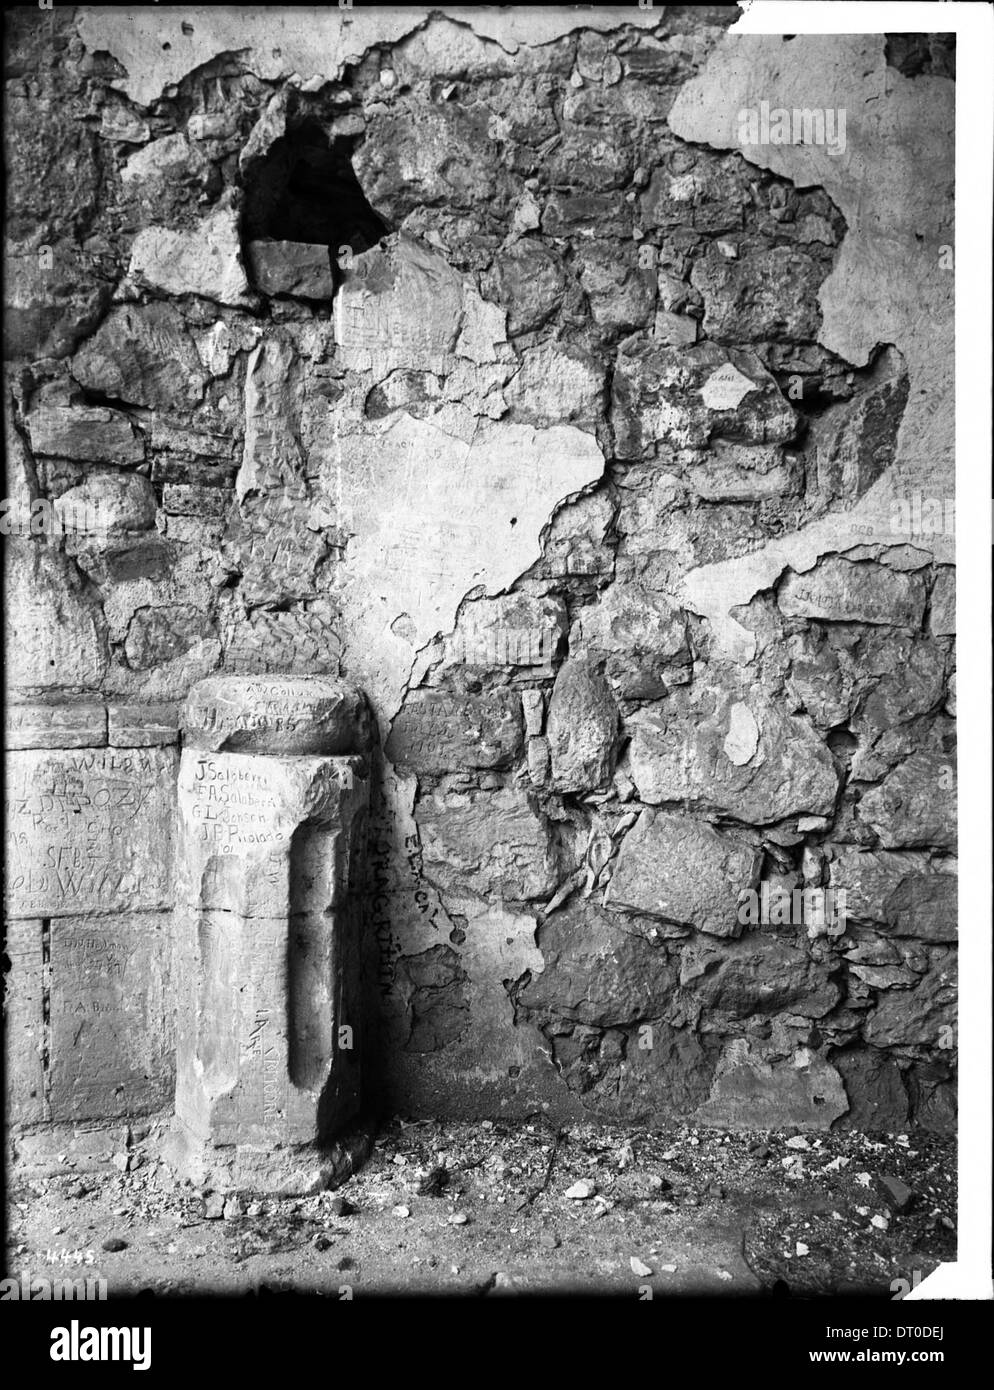 Detalles de trabajos de piedra en la misión de San Juan Capistrano, California, ca.1900 Foto de stock